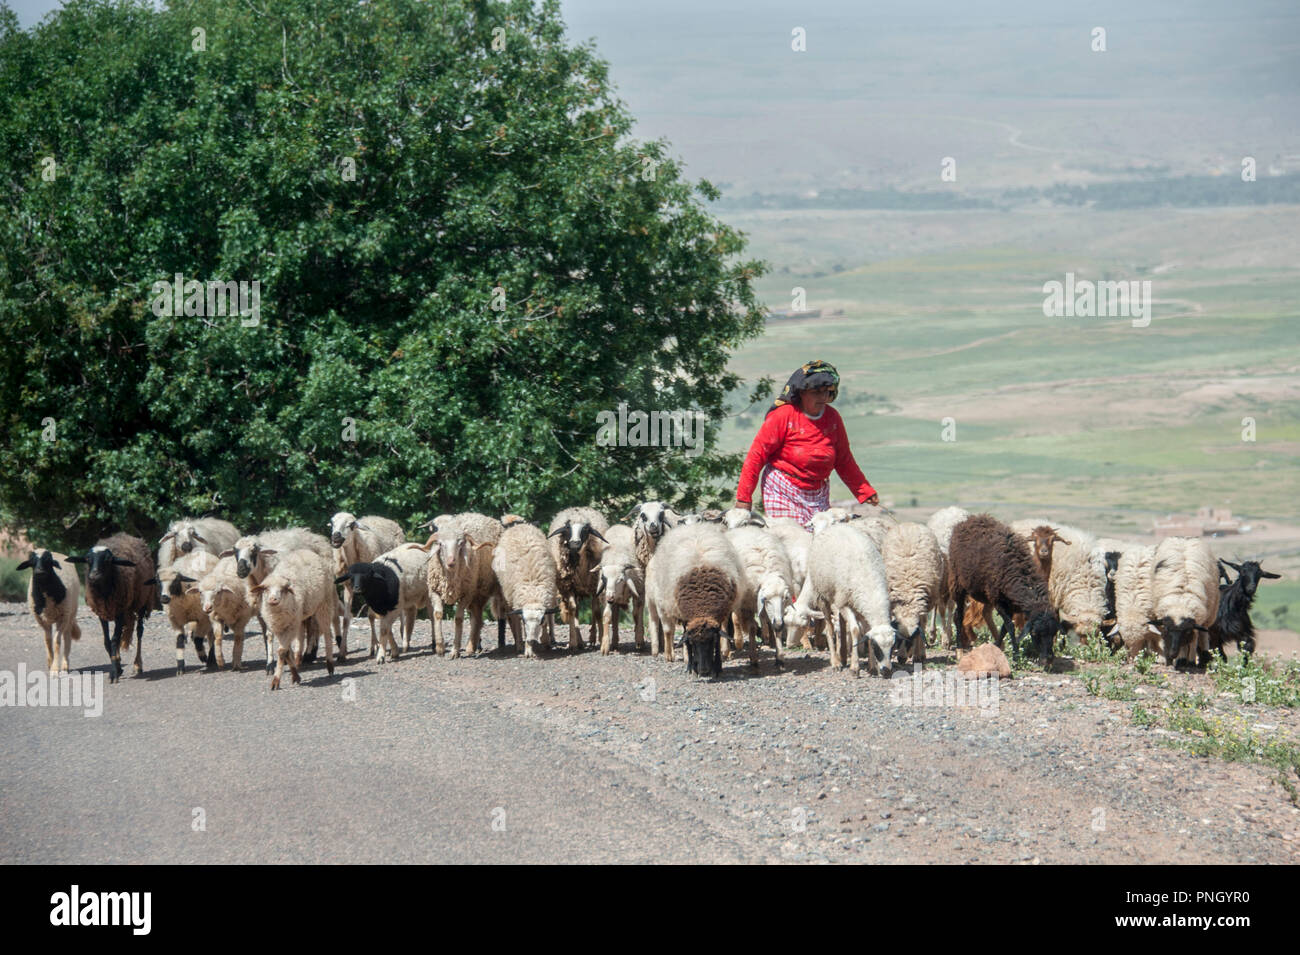 25-02-11. Marrakech, Morocco. A woman / shepheress herding sheep on a road climbing to the Atlas mountains to the south of Marrakech. Photo © Simon Gr Stock Photo